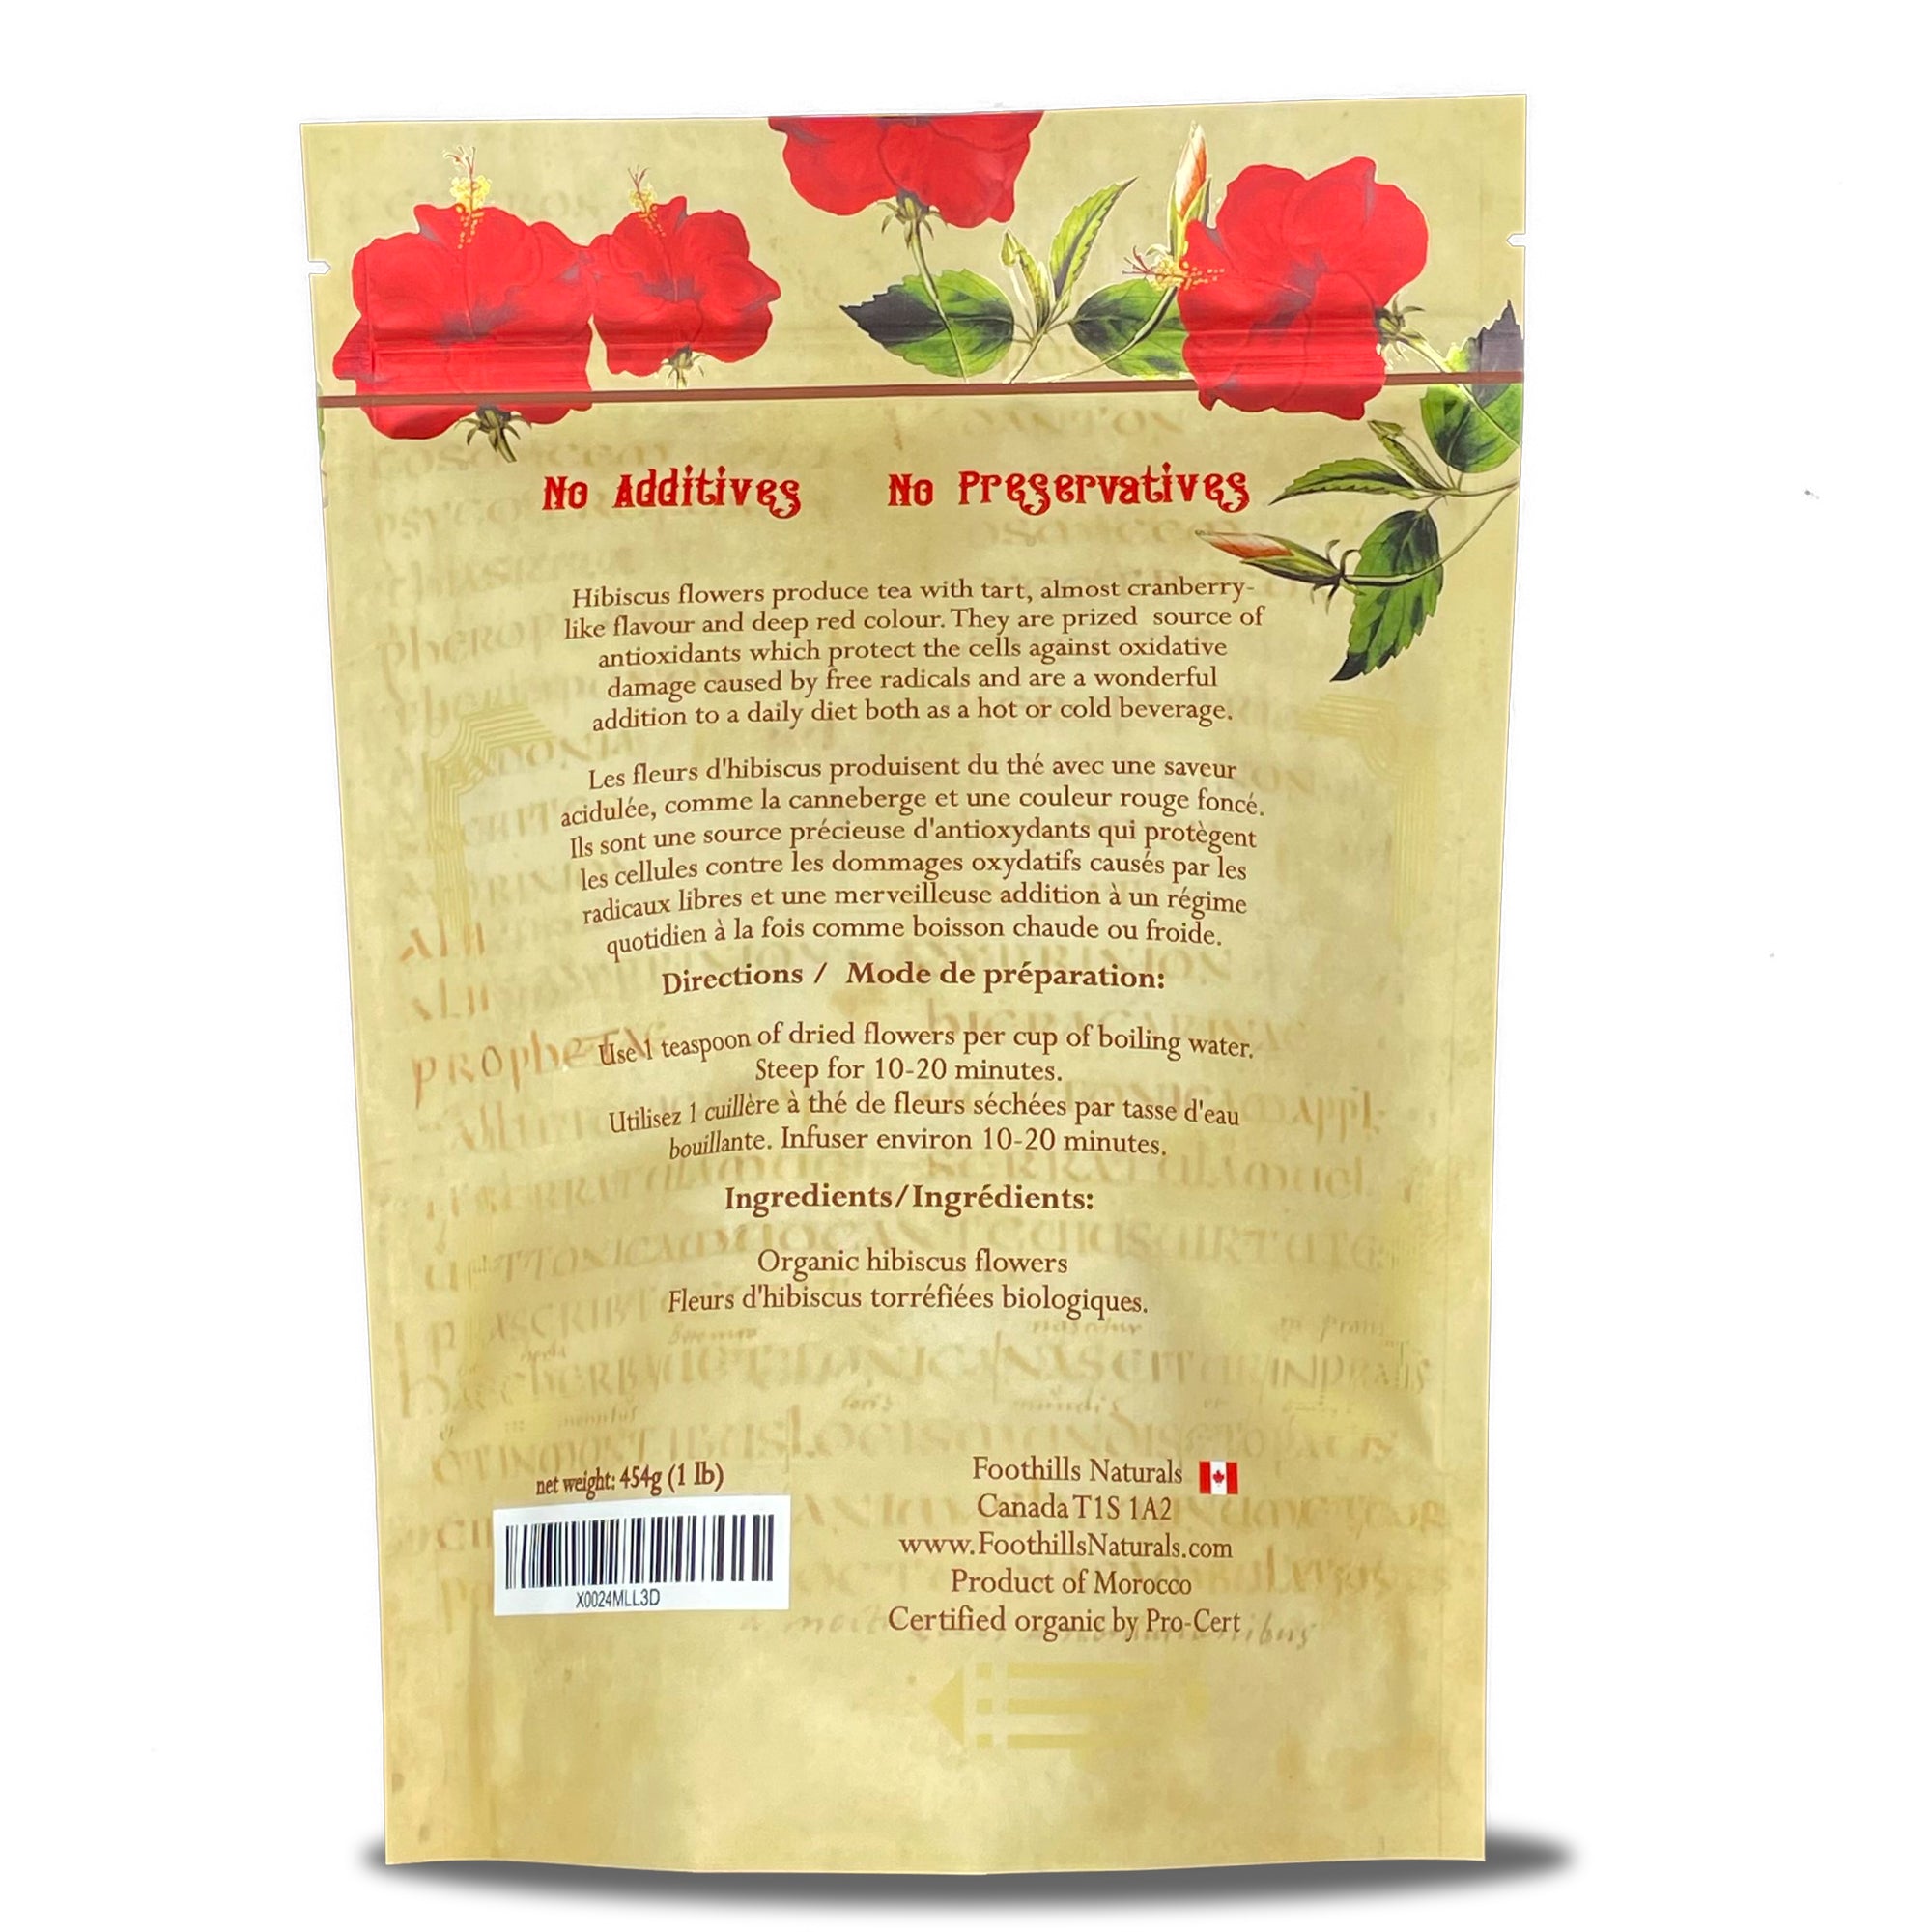 Hibiscus Tea Flowers Organic - Cut Flowers. Premium Quality